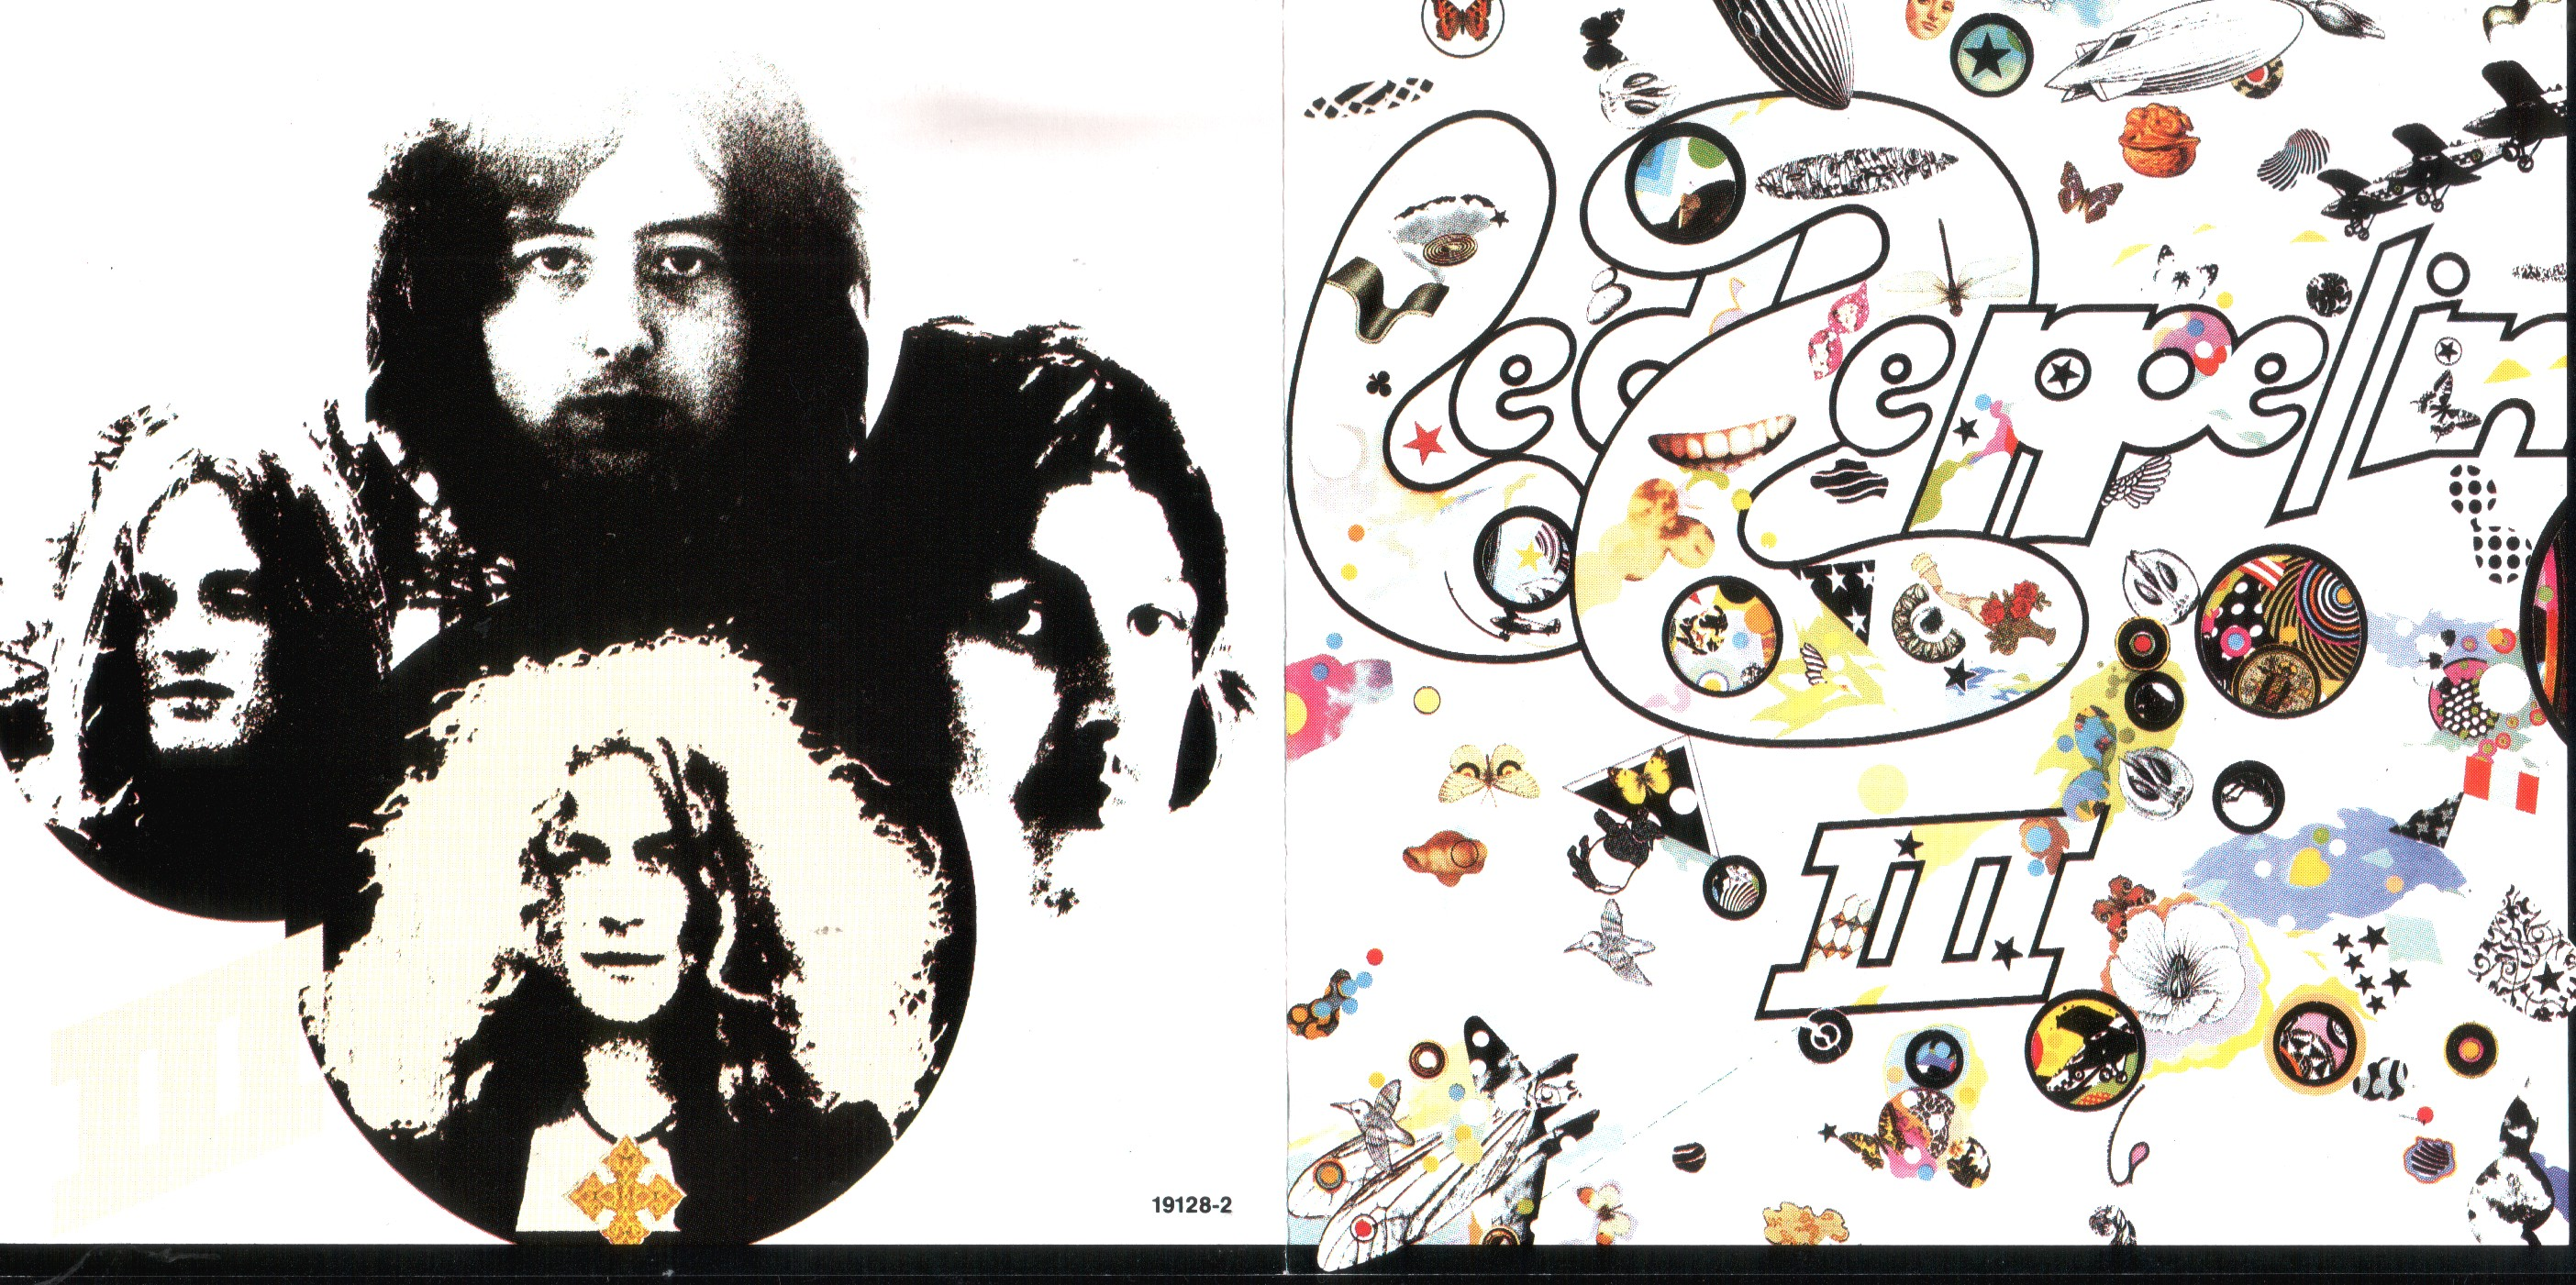 Led zeppelin iii led zeppelin. 1970 Led Zeppelin III обложка. Led Zeppelin 3 обложка. Led Zeppelin 3 LP. Led Zeppelin "led Zeppelin 3".